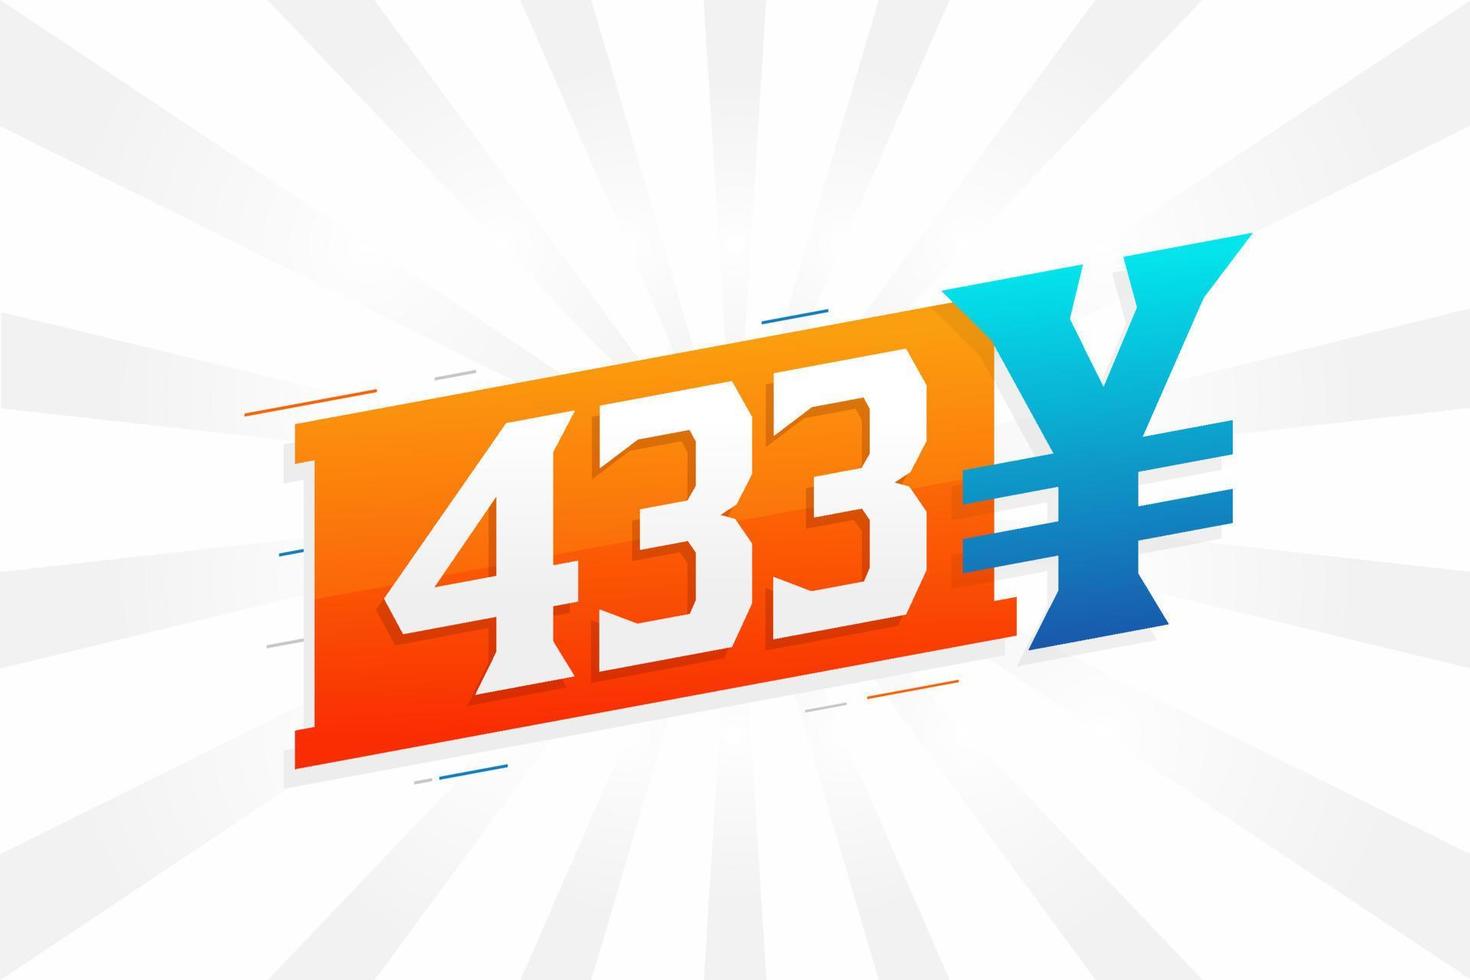 Símbolo de texto vectorial de moneda china de 433 yuanes. 433 yen moneda japonesa dinero stock vector